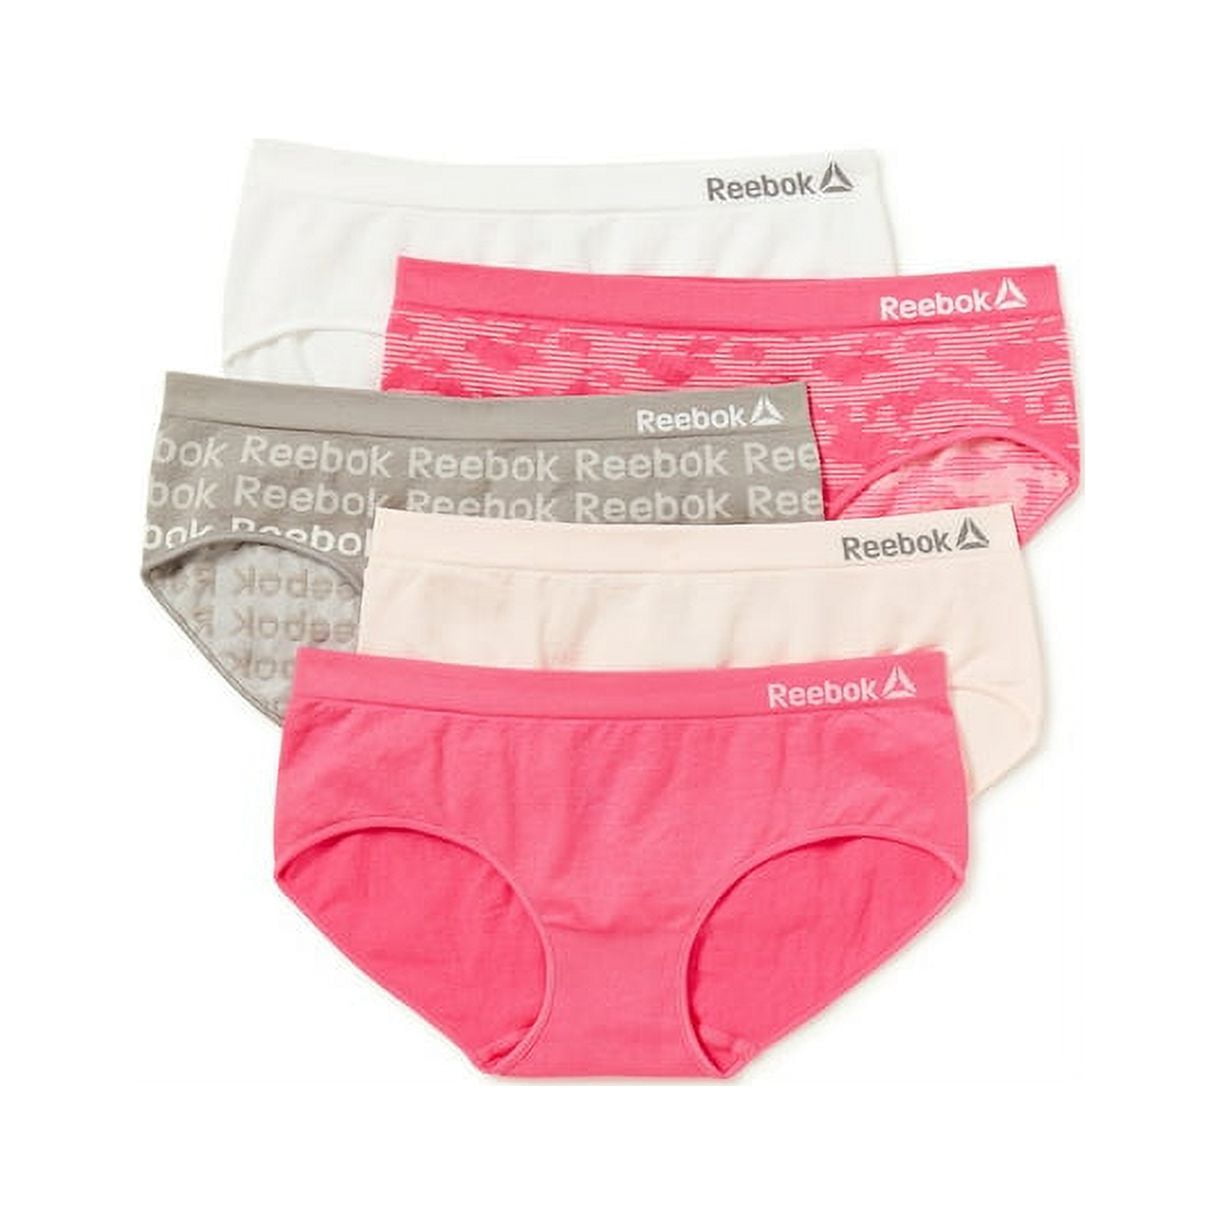 Reebok Women's Underwear – 5 Pack Seamless Palestine